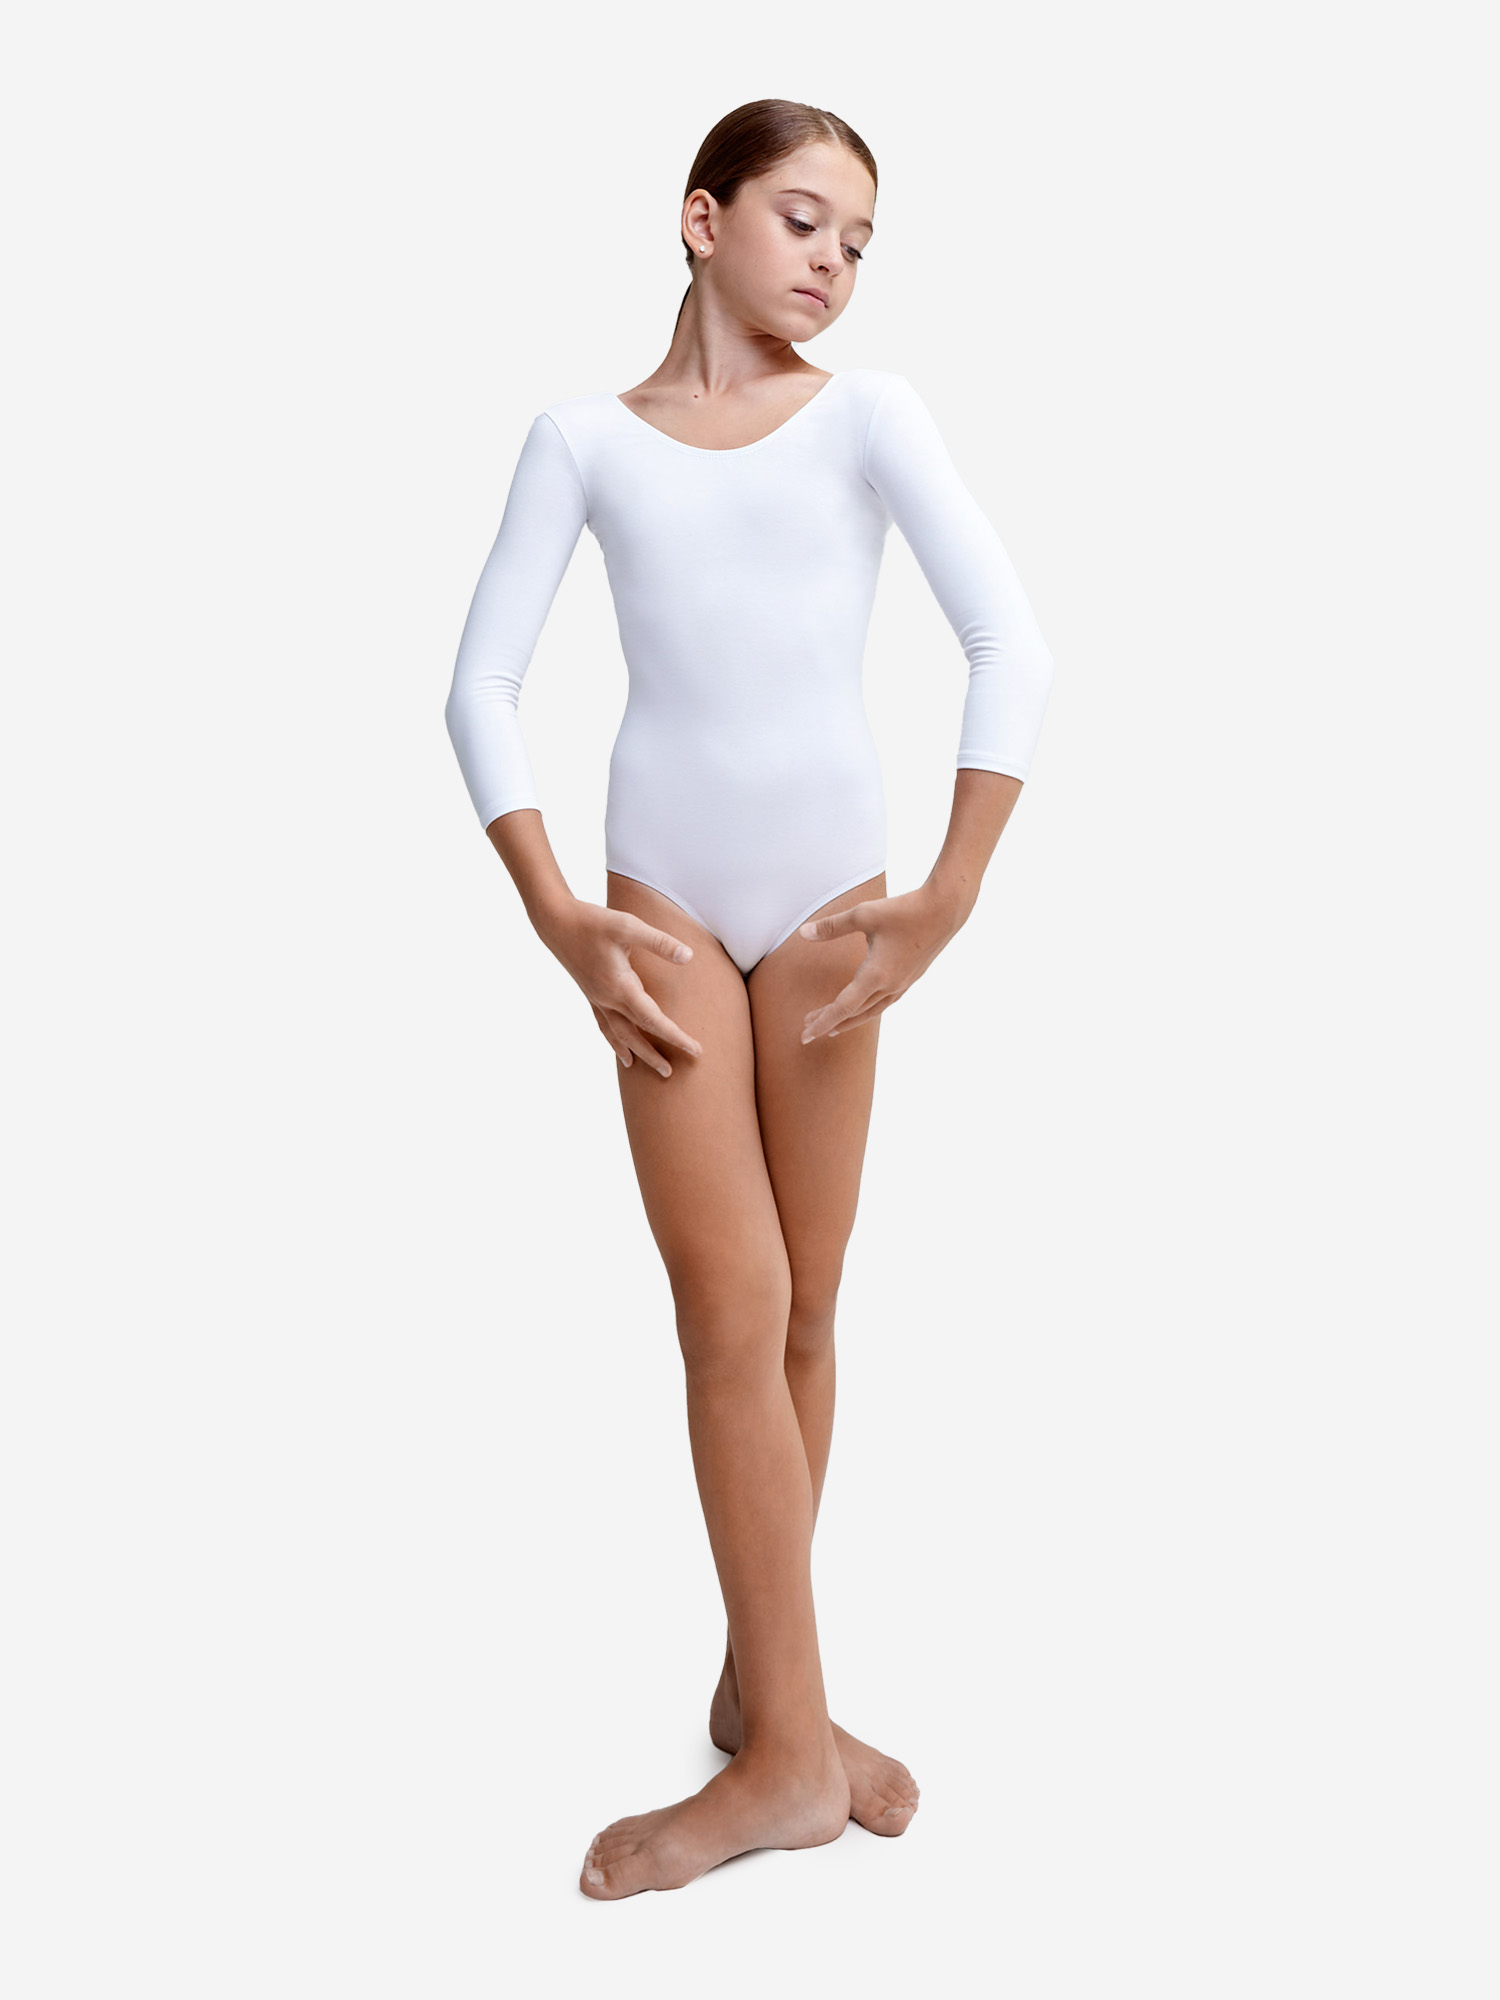 Купальник гимнастический Belkina без юбки для танцев и тренировок, Белый купальник гимнастический belkina без юбки для танцев и тренировок белый